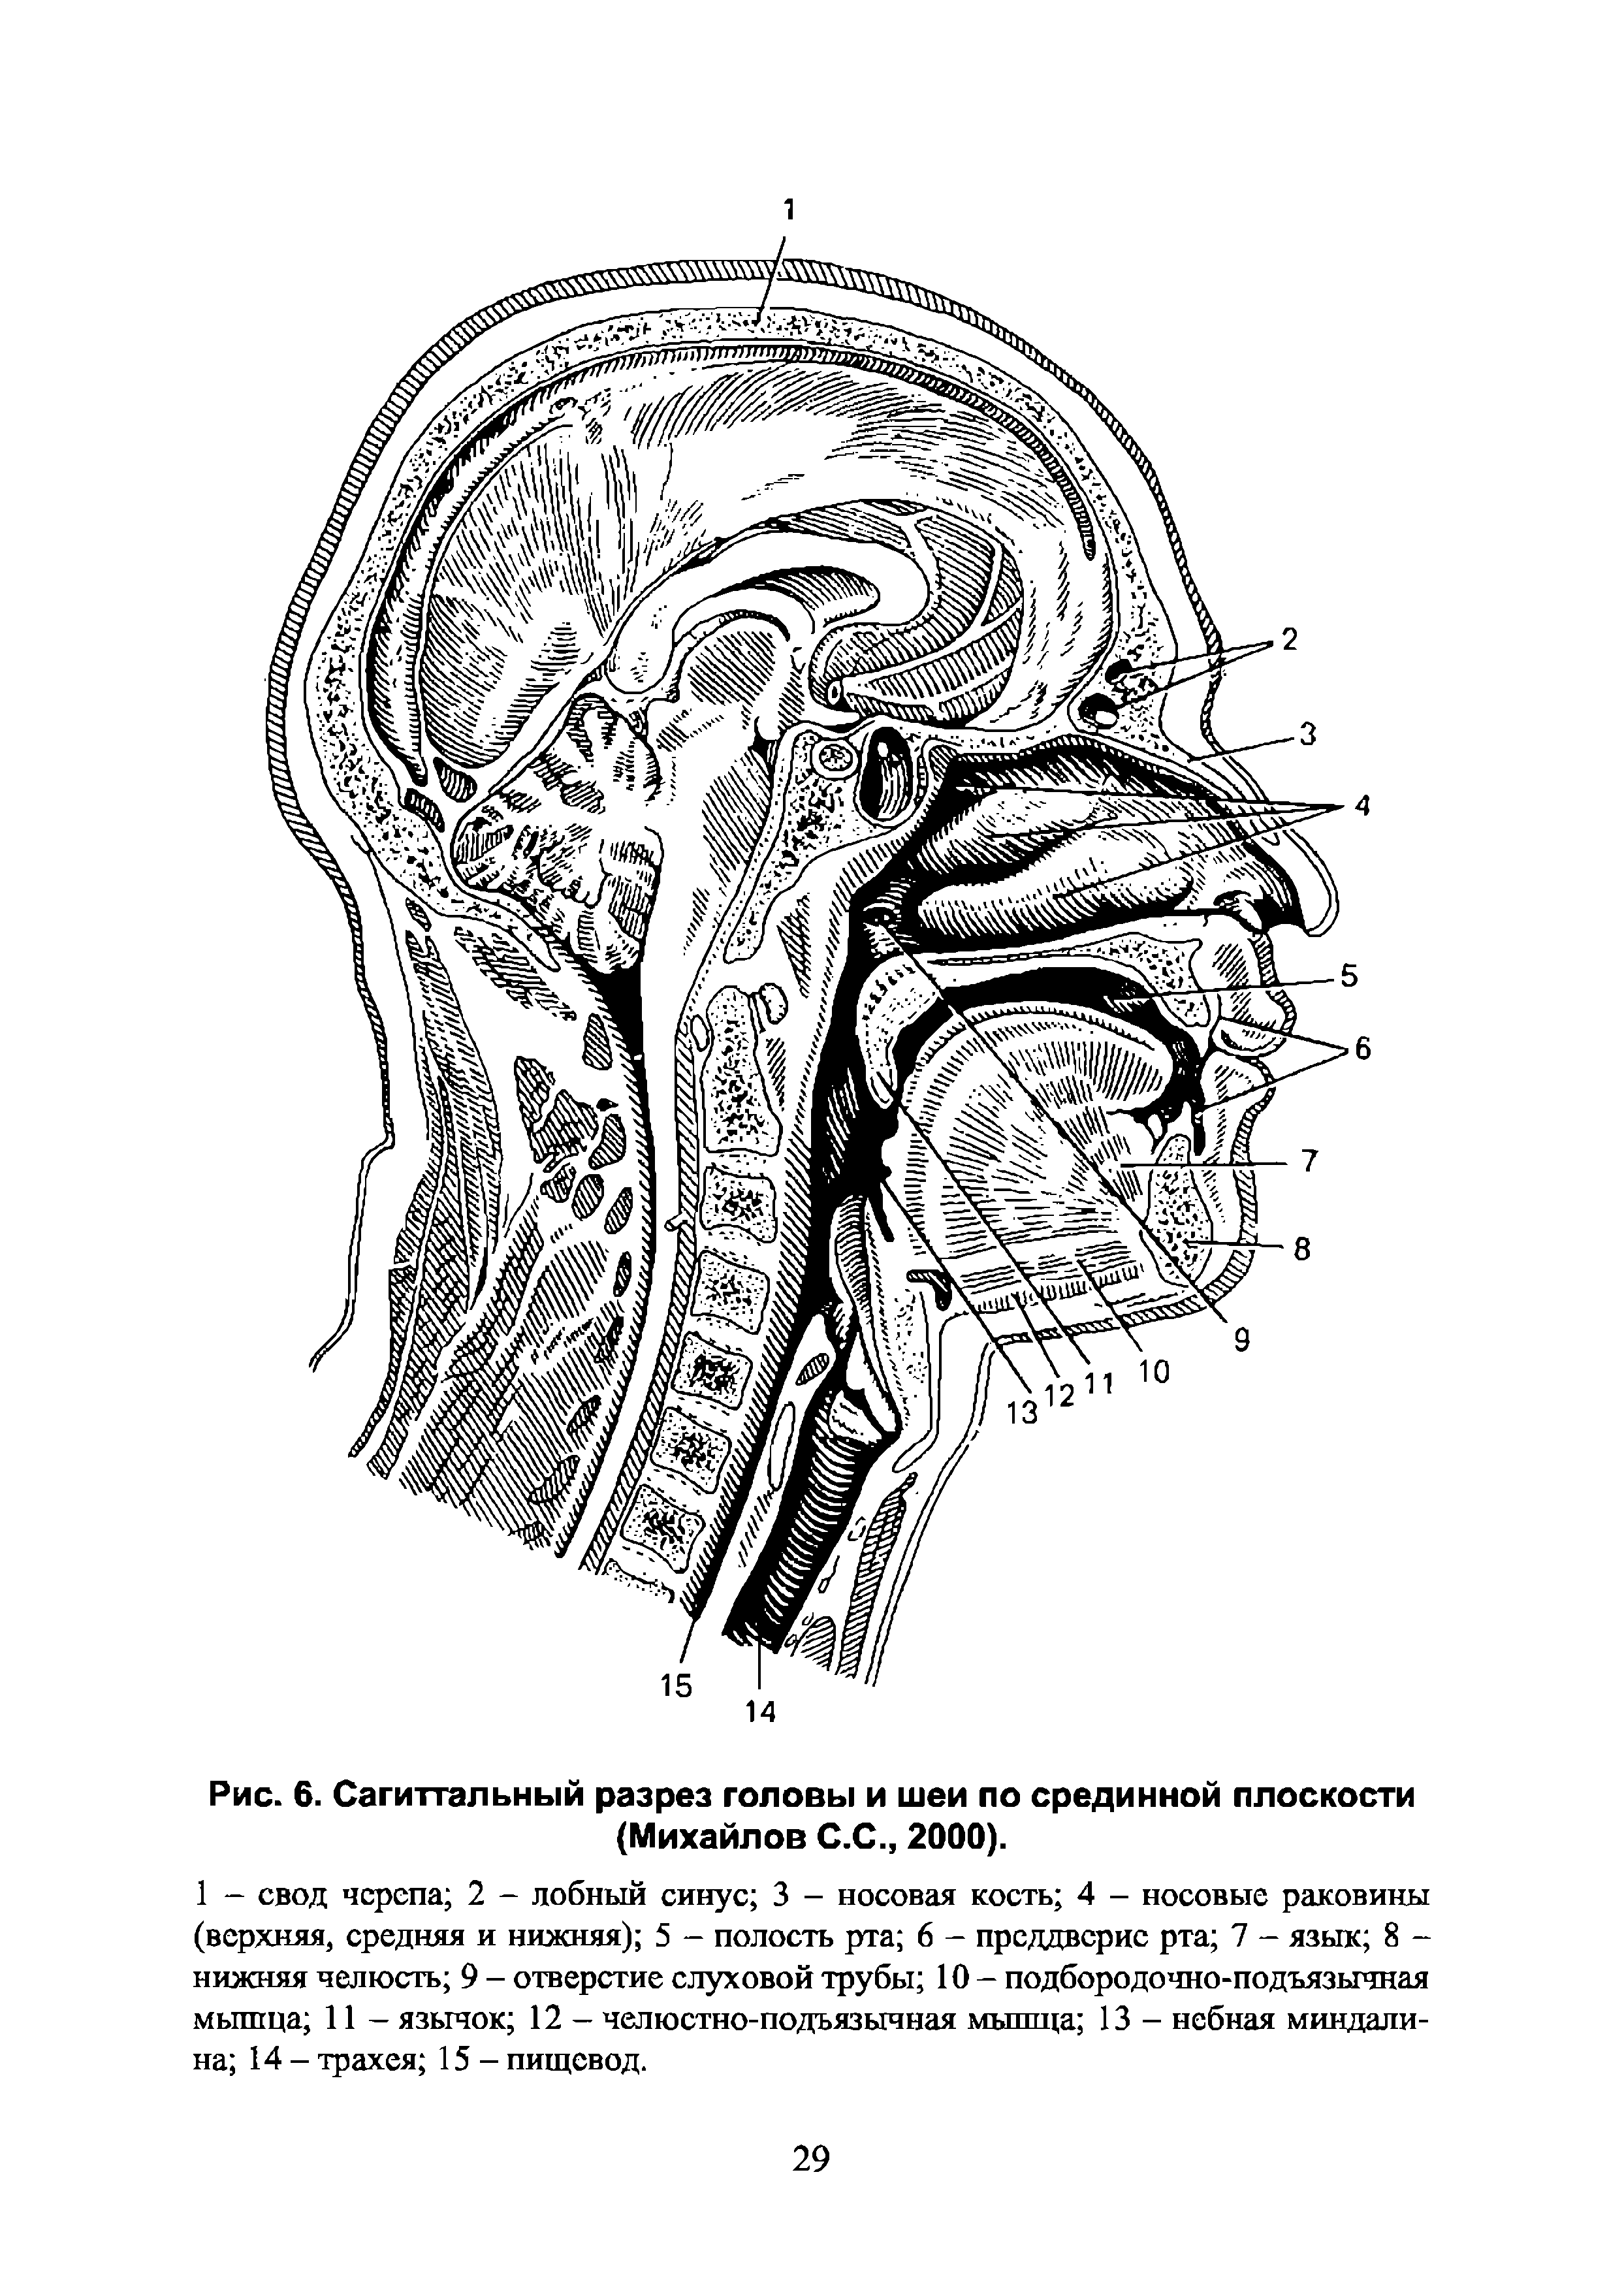 Рис. 6. Сагиттальный разрез головы и шеи по срединной плоскости (Михайлов С.С., 2000).